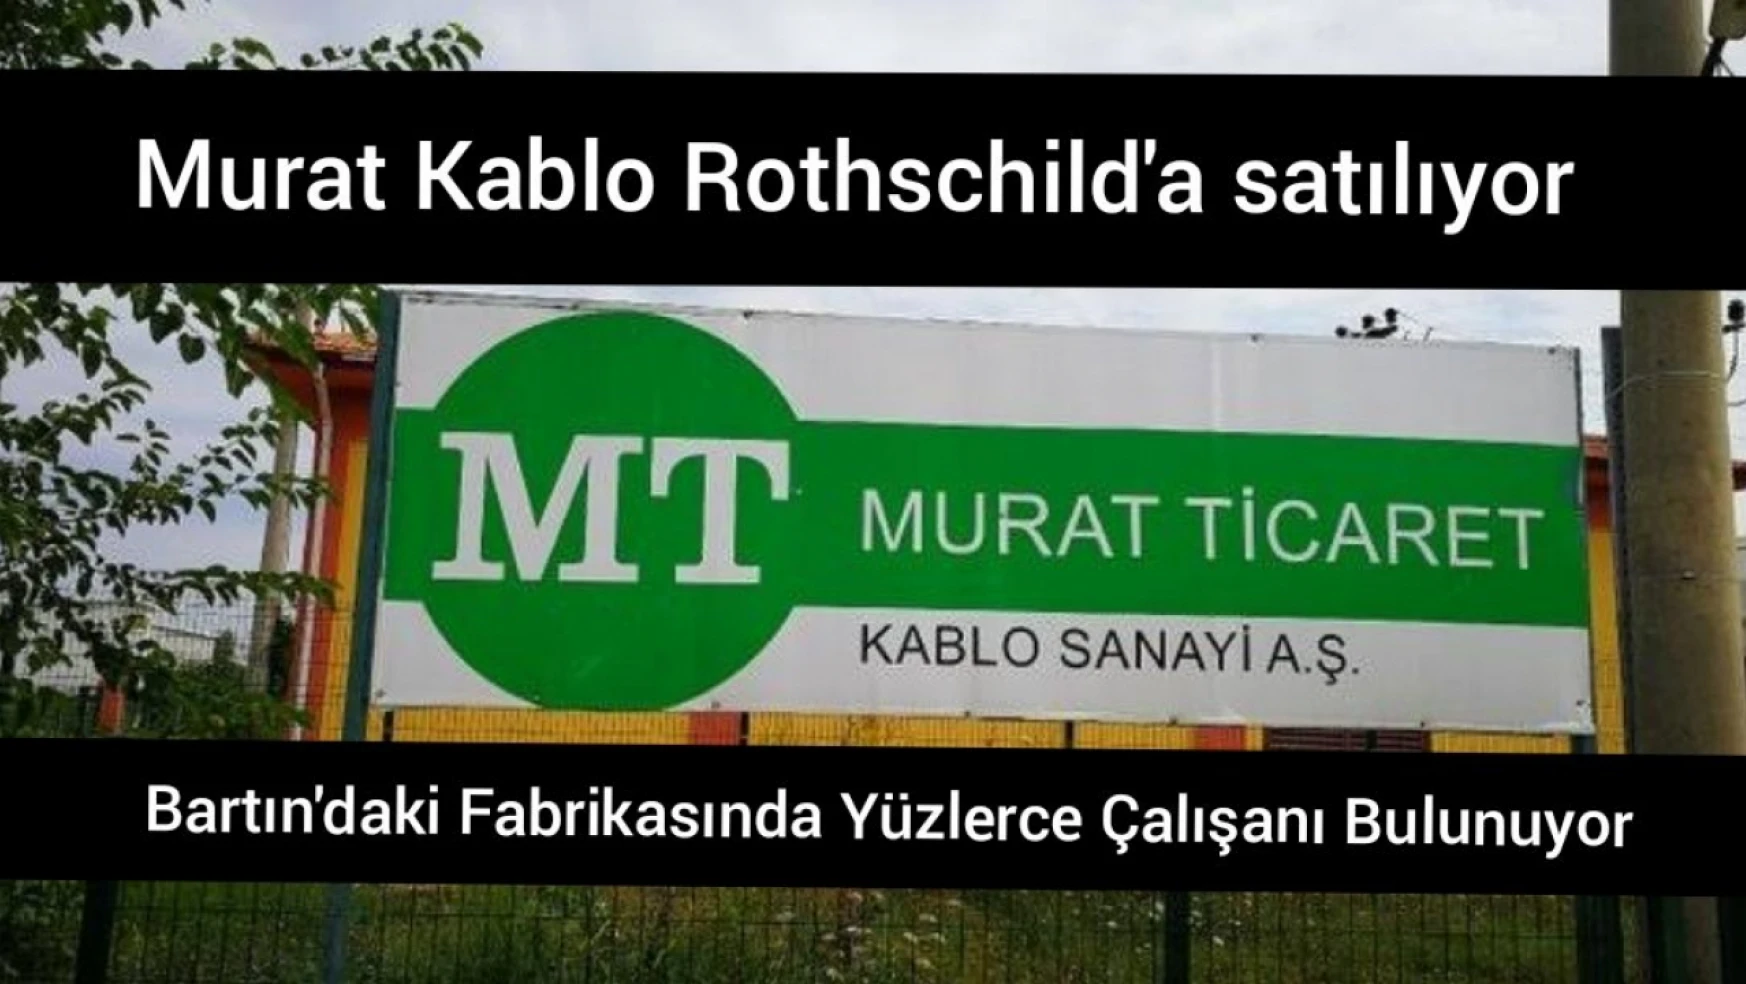 Murat Kablo Rothschild'a satılıyor